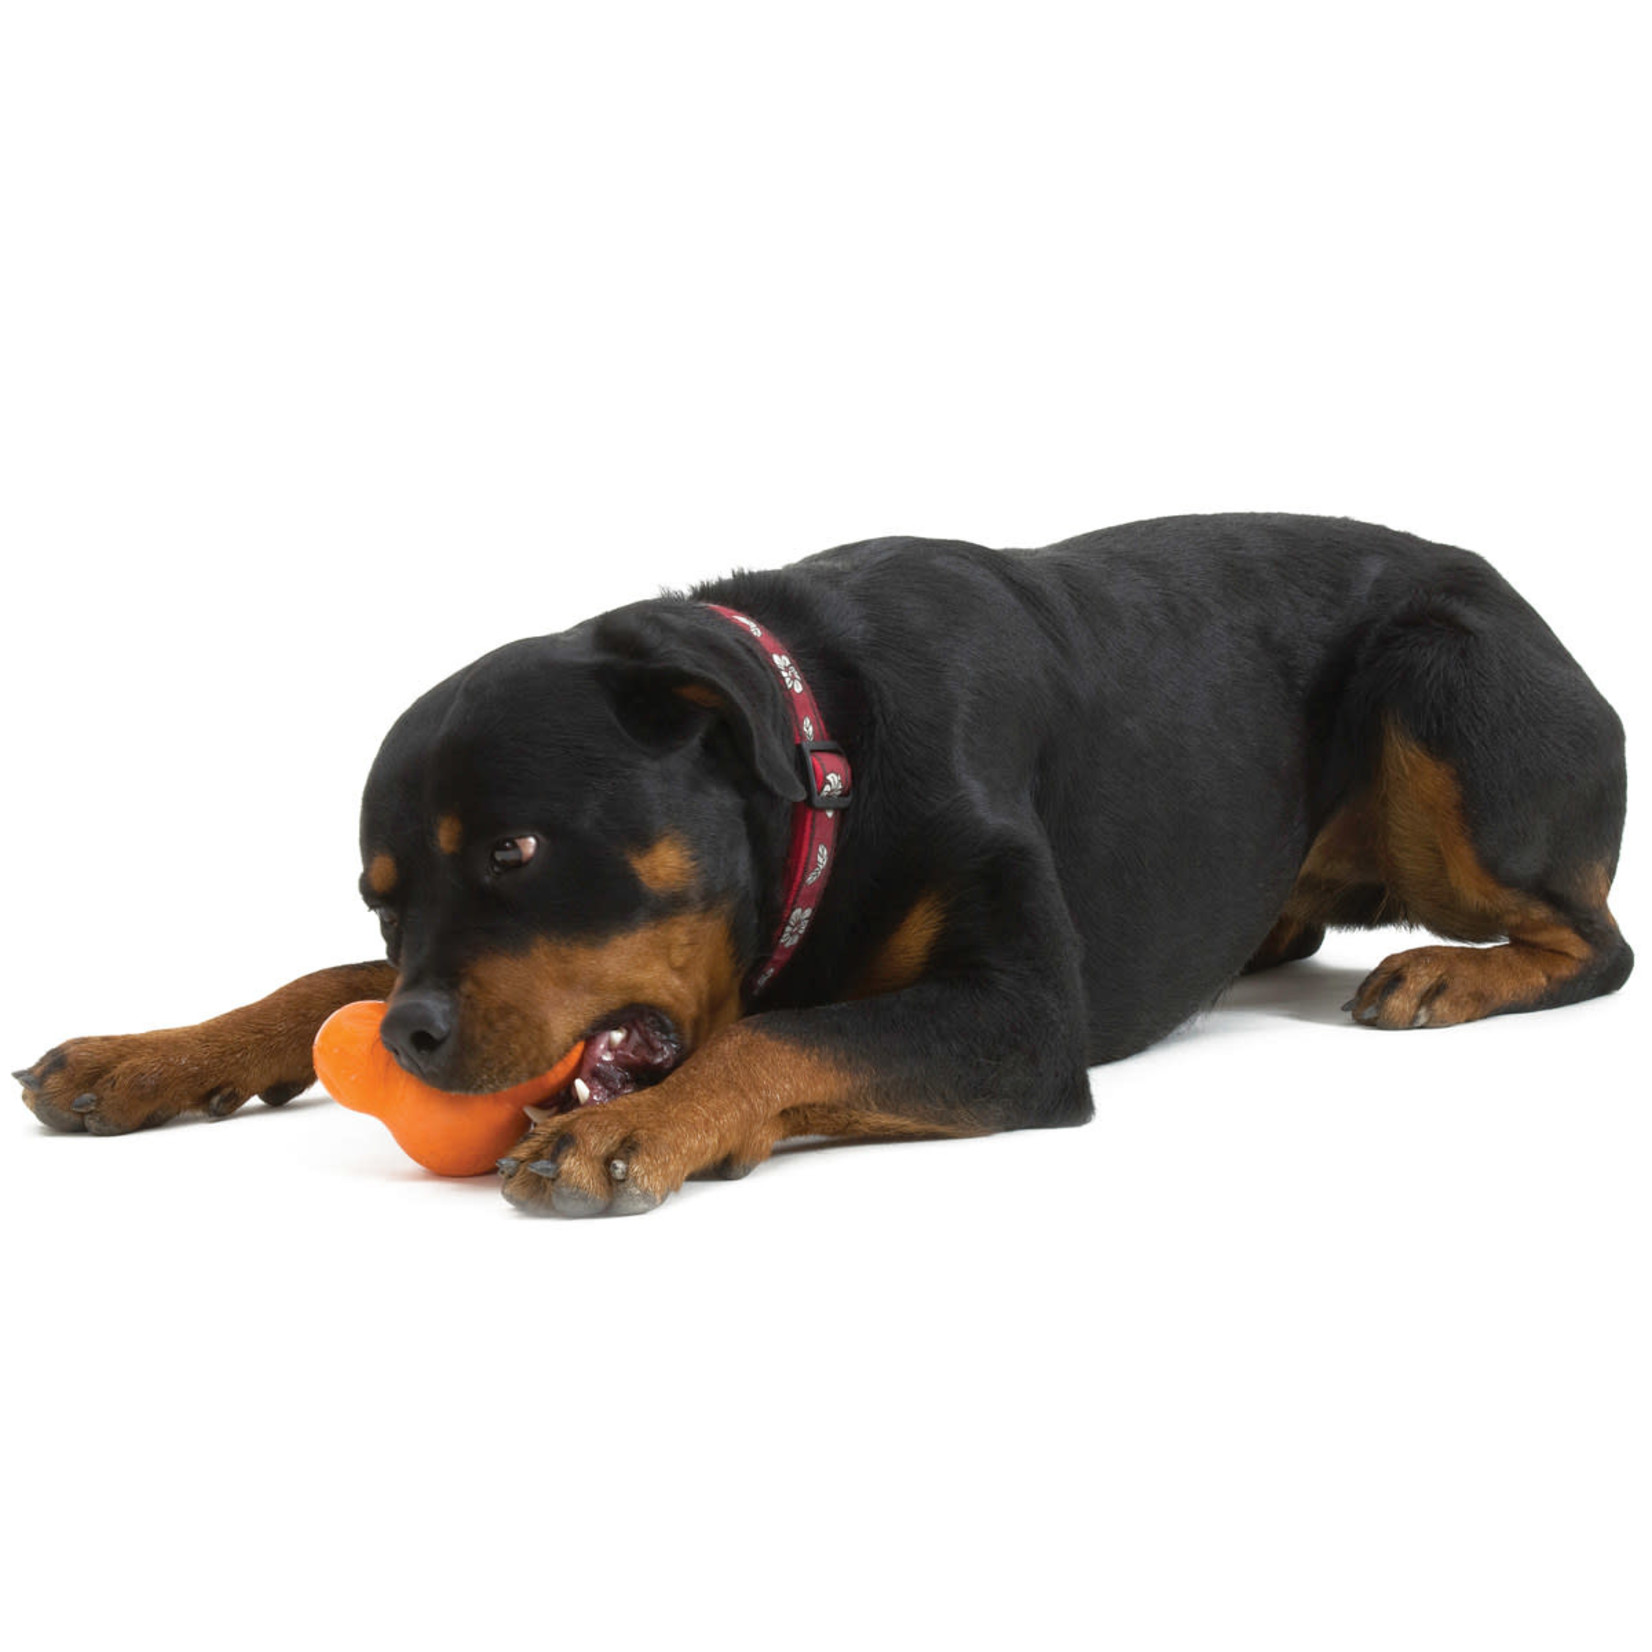 Tux Large 5" - orange dog toy